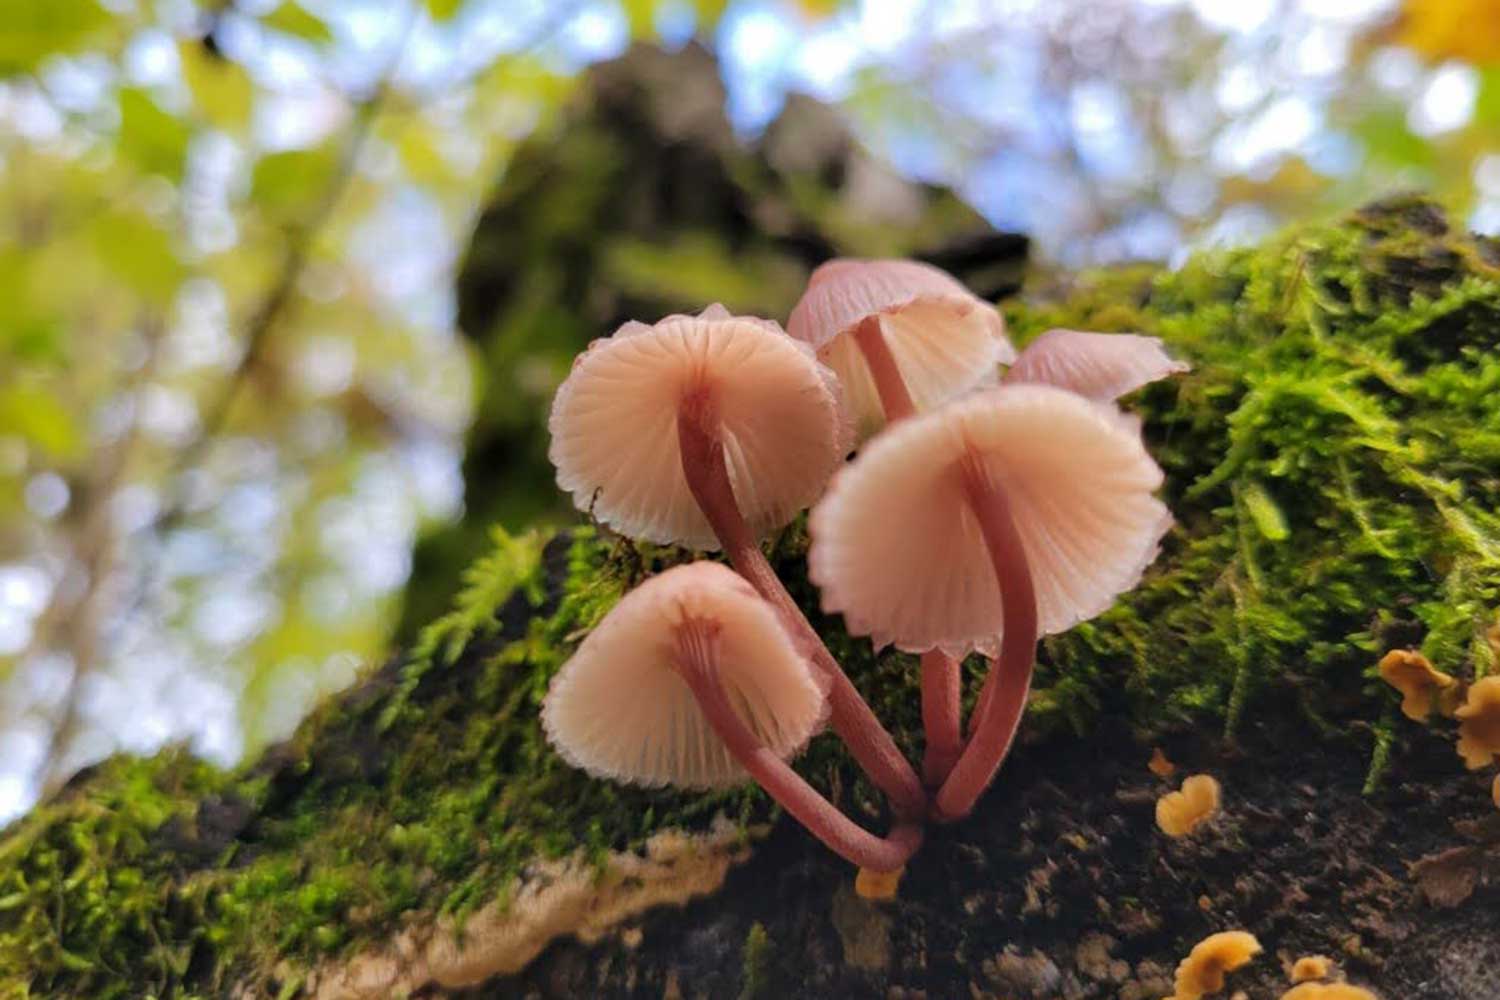 Mushrooms on tree bark.